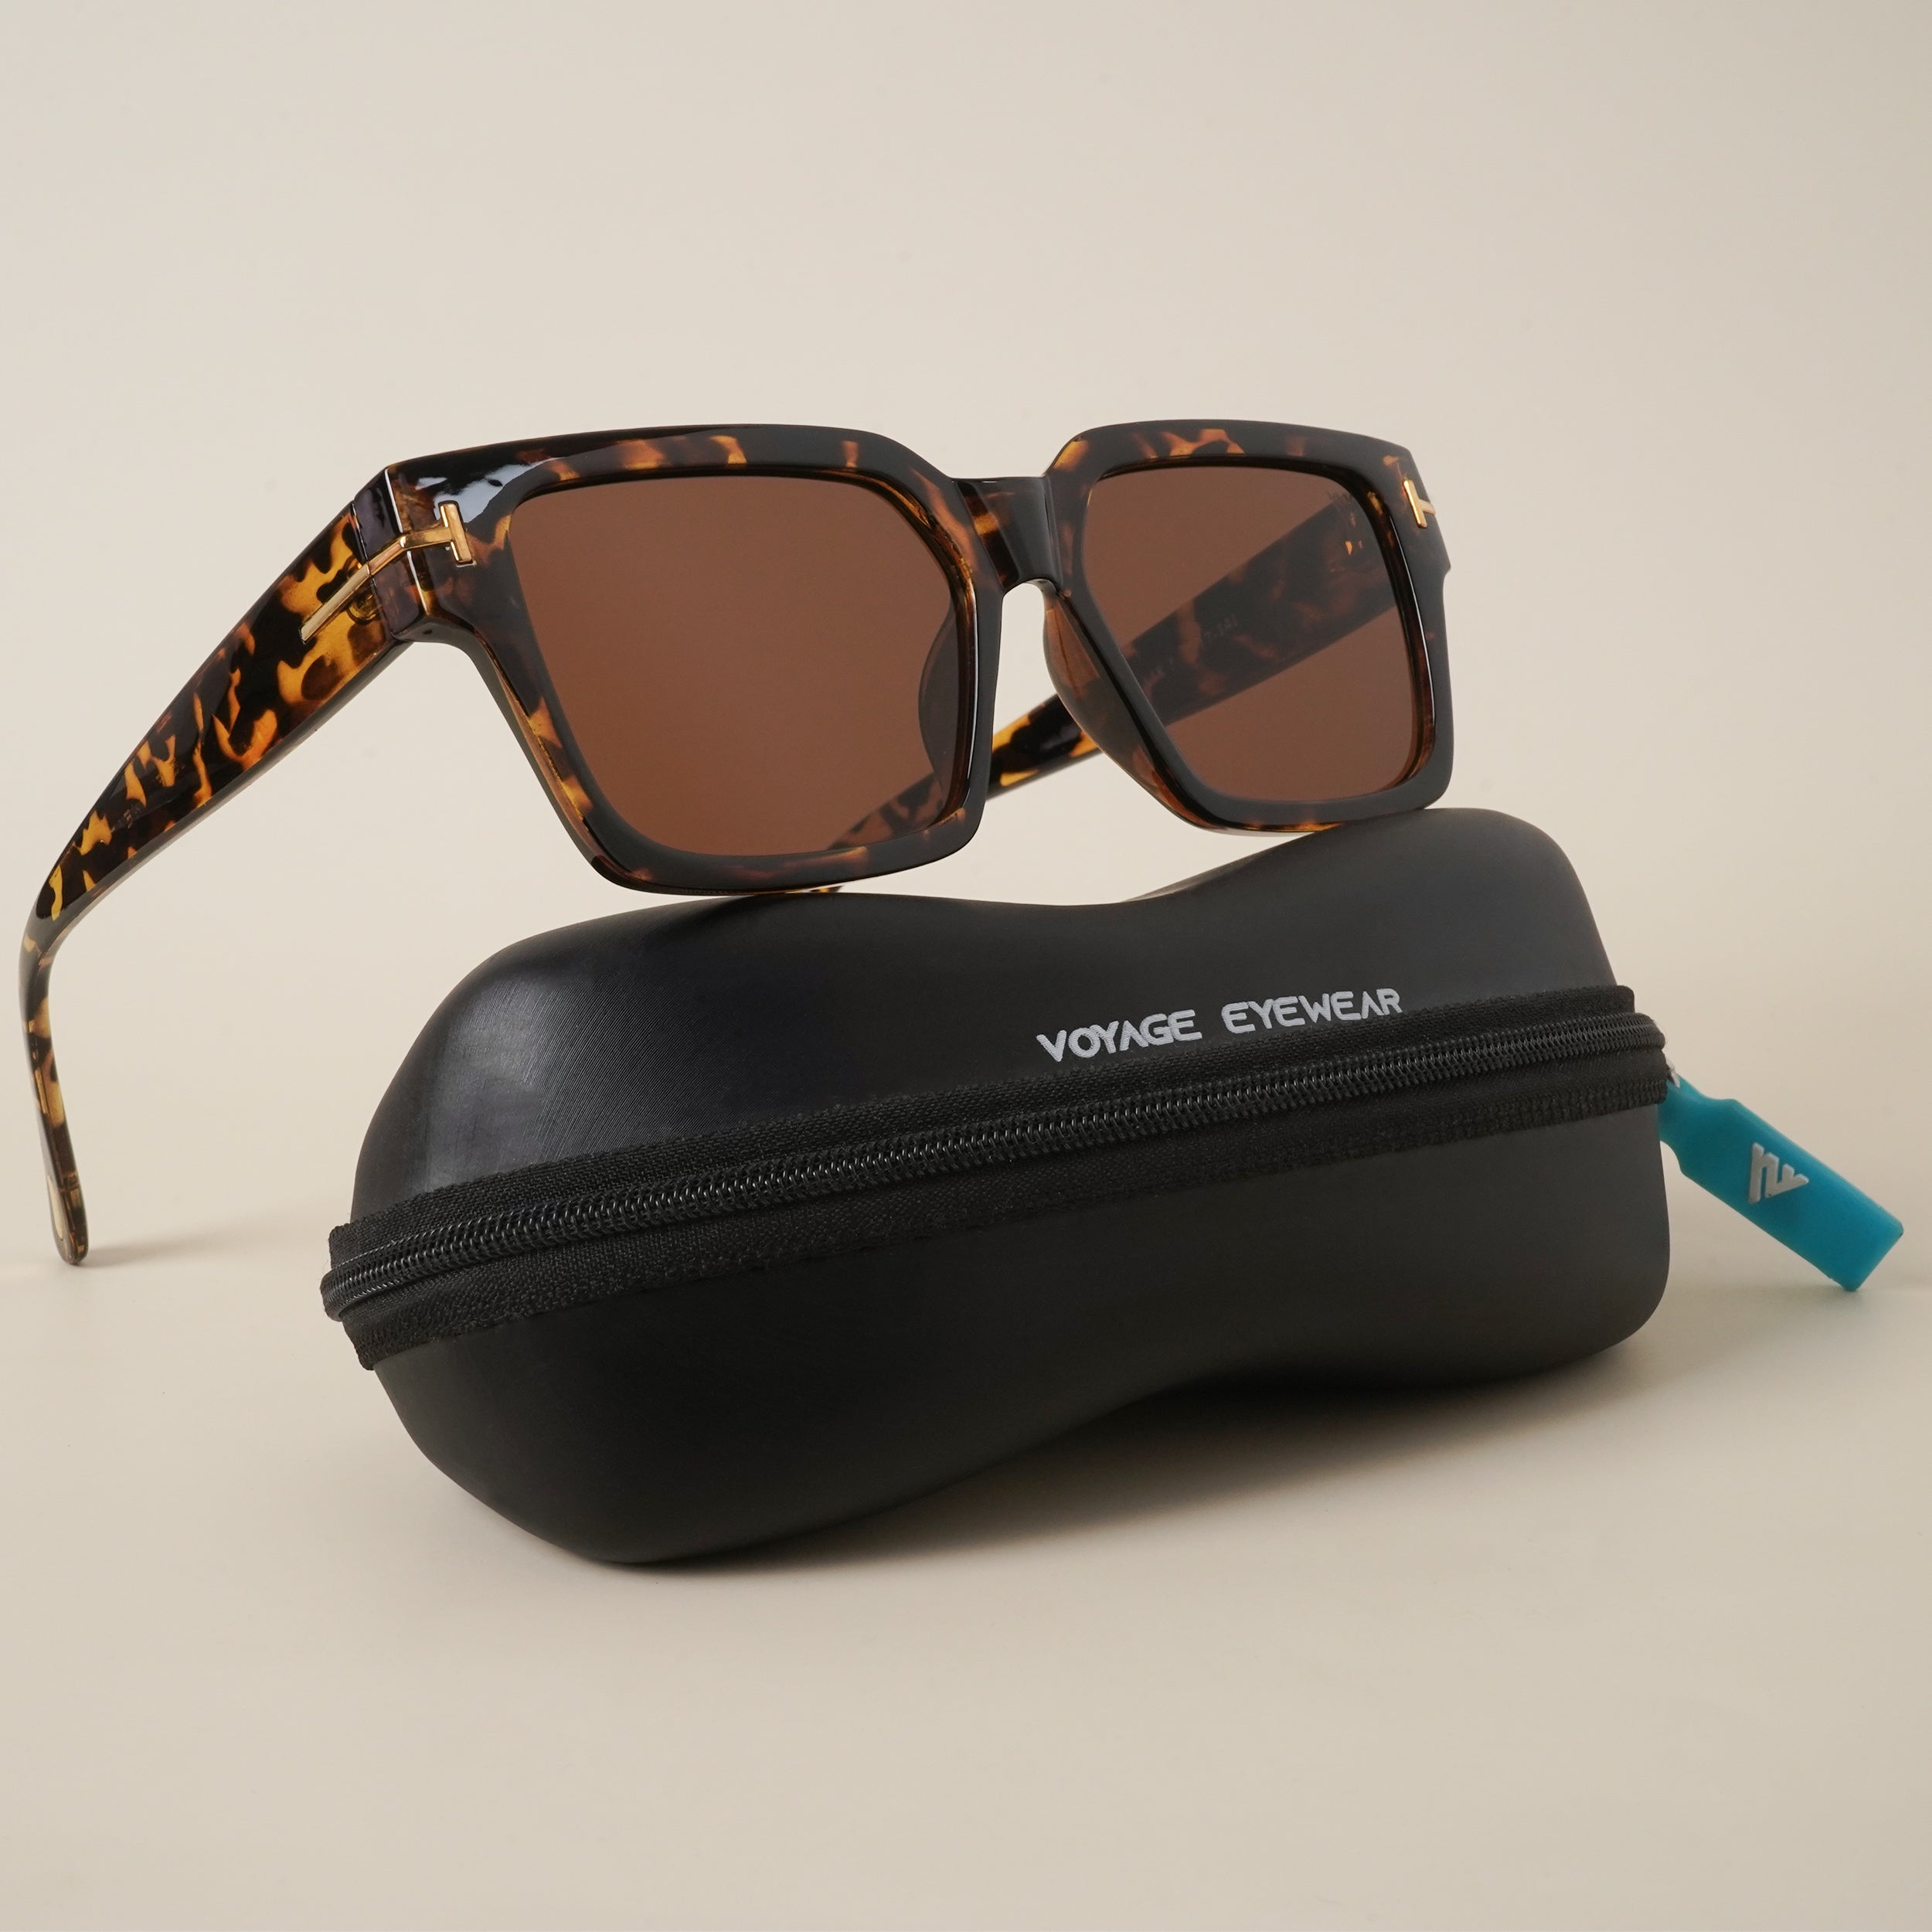 Voyage Brown Wayfarer Sunglasses for Men & Women (A18MG3951)